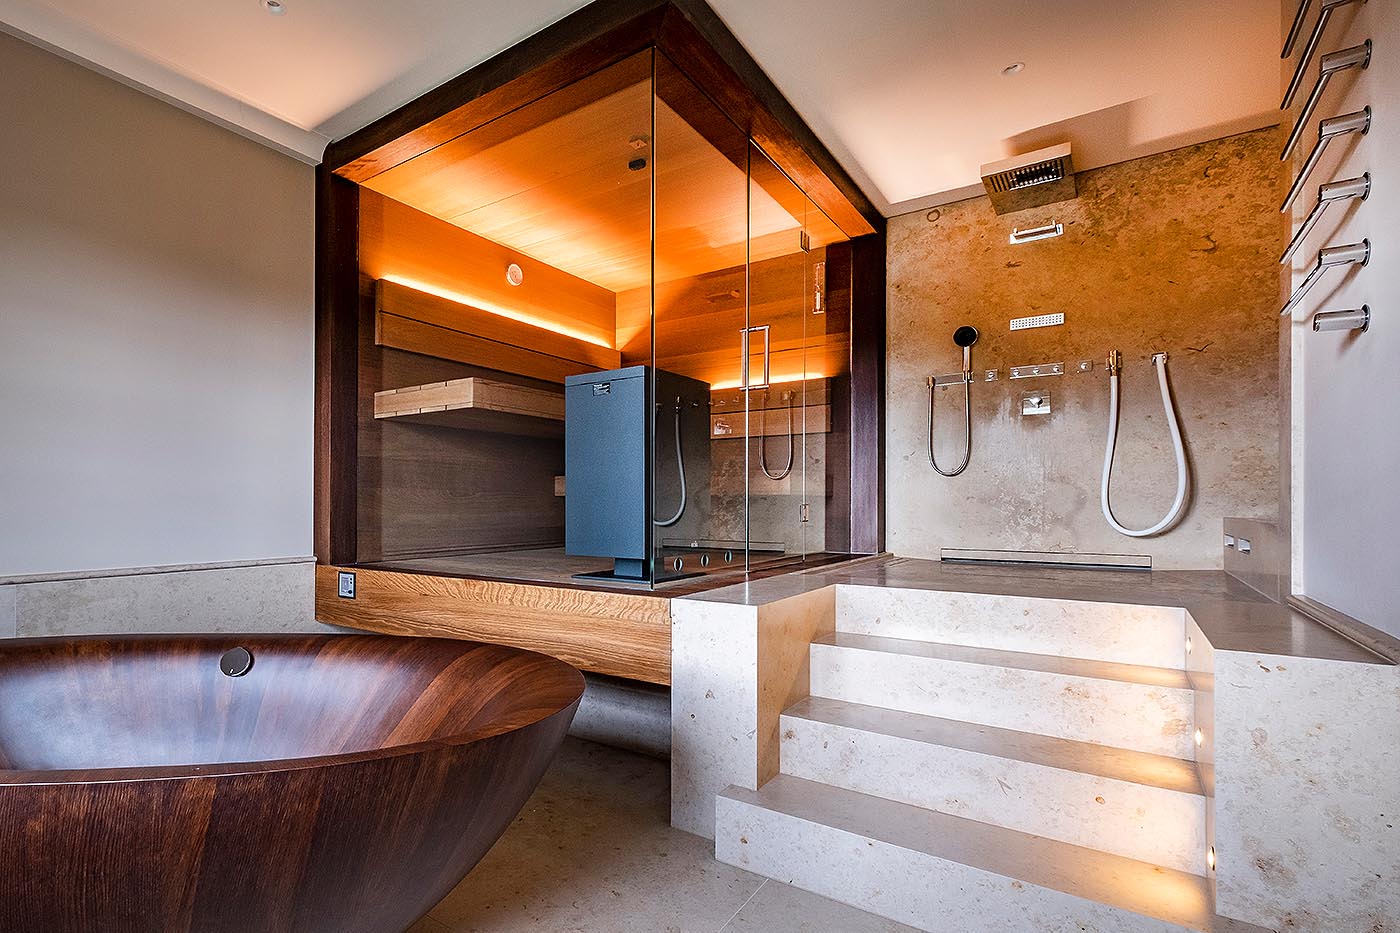 Sauna nach Maß: Design Sauna Nimbus als Ecksauna mit zwei großen Glaselementen: moderne Sauna für Zuhause im Bad in Thermo-Eiche mit schwebenden Bänken.